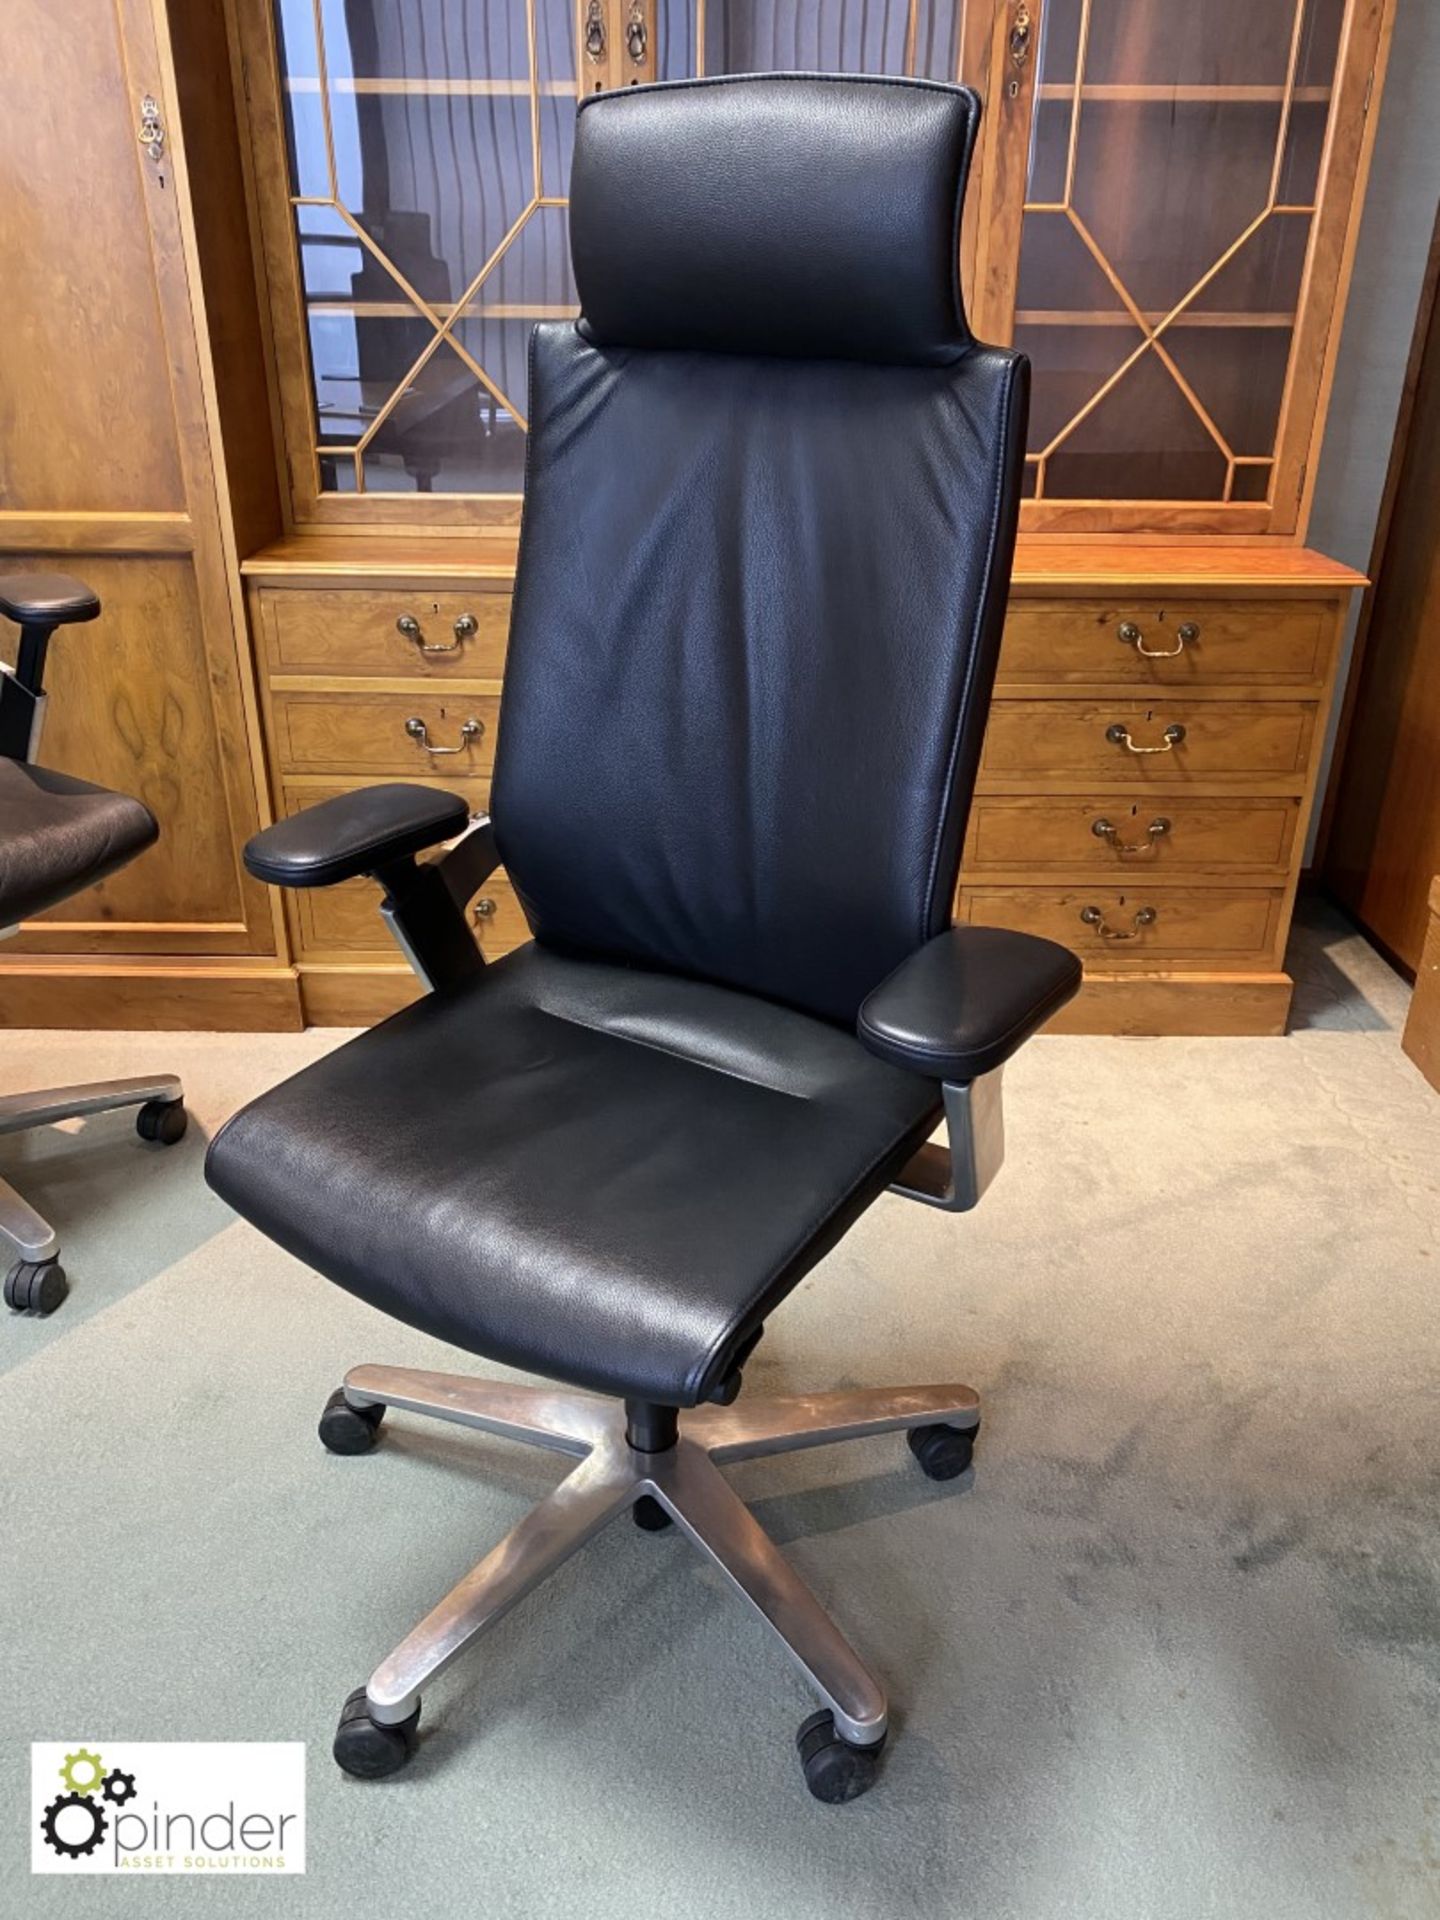 Wilkhahn 175/71 leather upholstered fully adjustable high back swivel office Armchair, black (